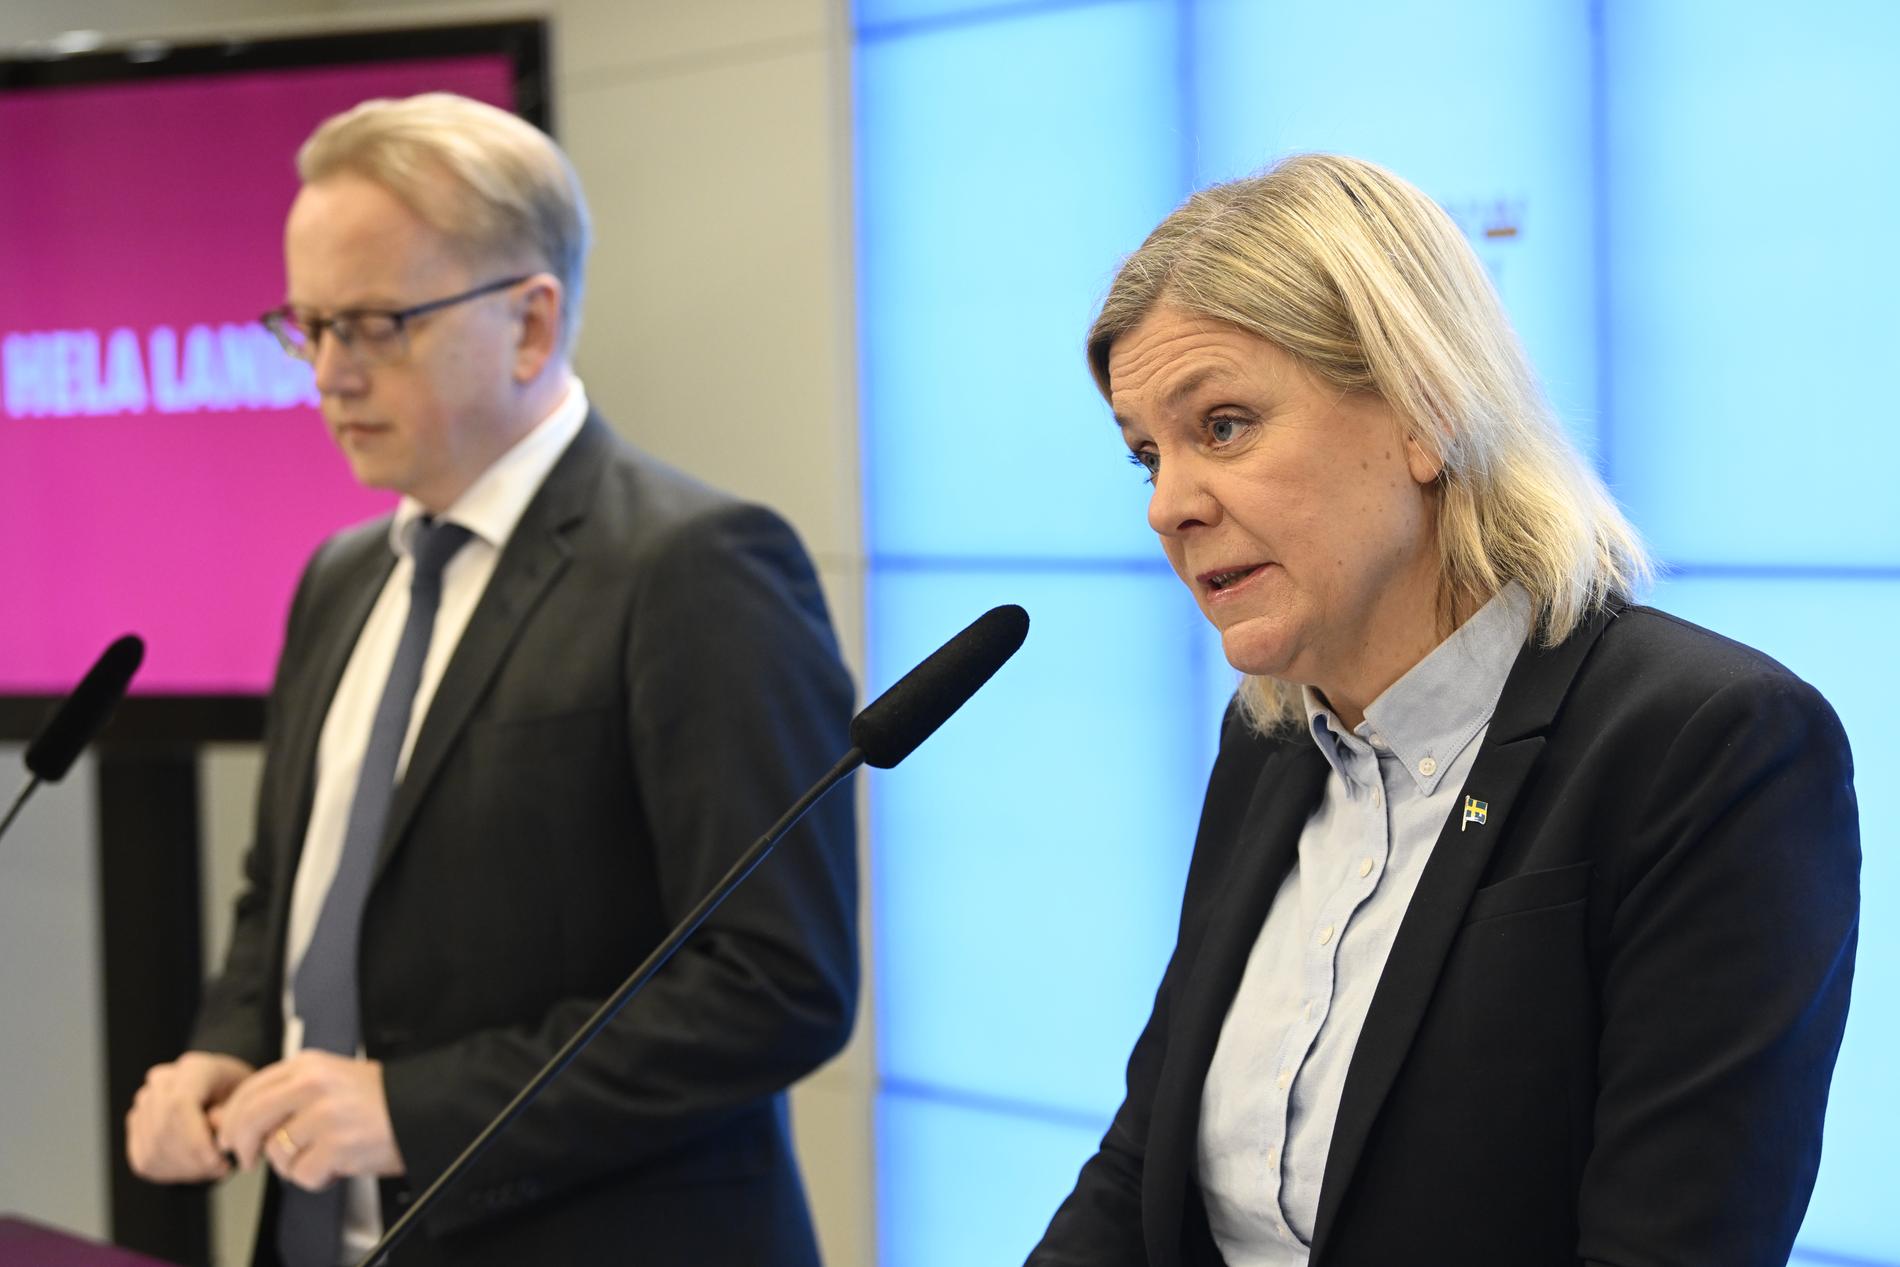 Socialdemokraternas partiledare Magdalena Andersson (S) och gruppledare i näringsutskottet Fredrik Olovsson (S) presenterar åtgärder mot höga elpriser.